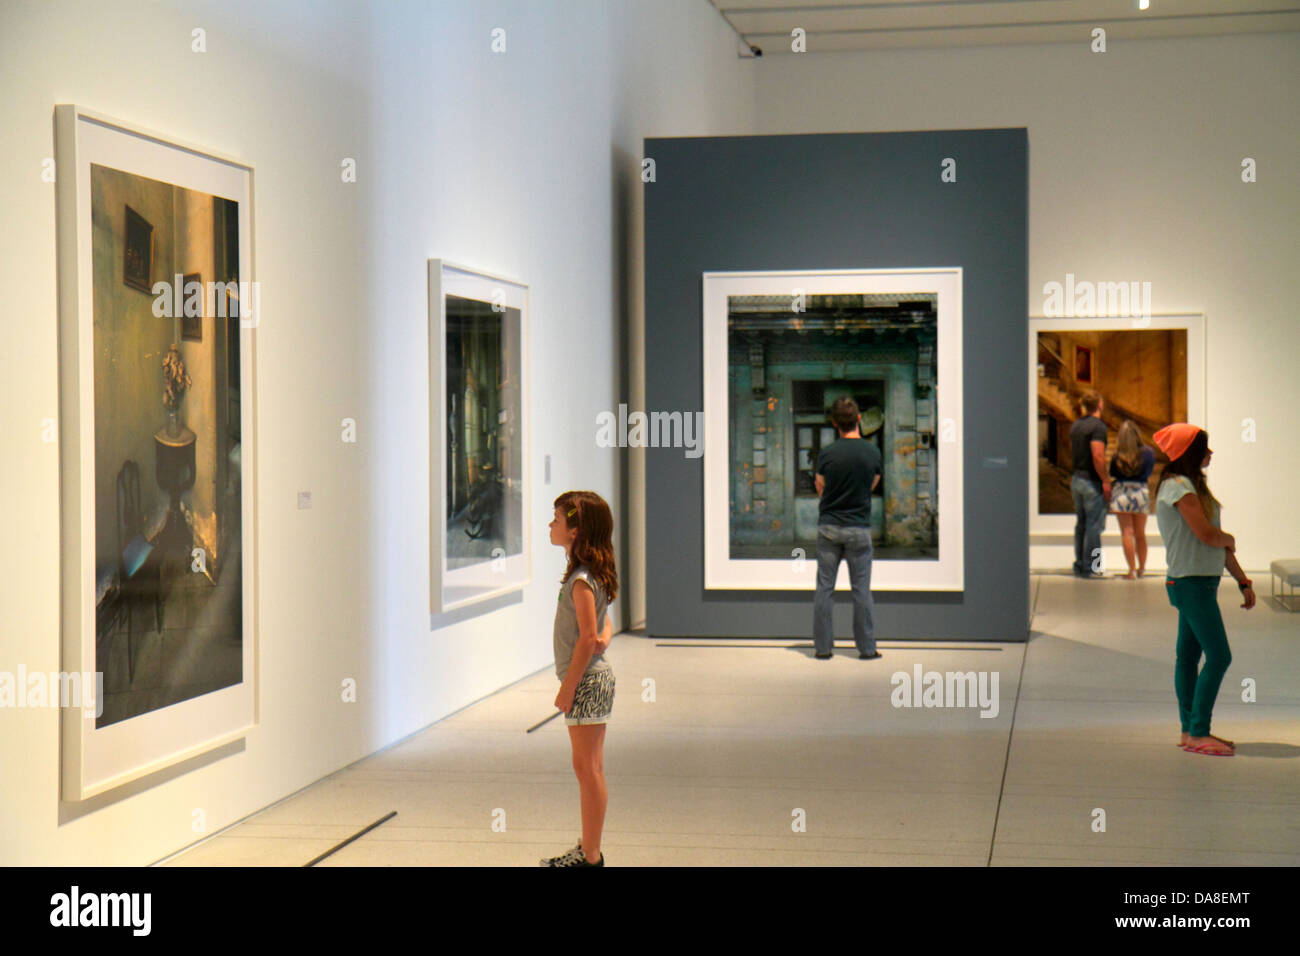 Florida,Tampa,Tampa Museum of Art,galería,interior,mirando,apreciando,fotografías,adolescentes adolescentes adolescentes chicas,jovencita,jovencita,j Foto de stock